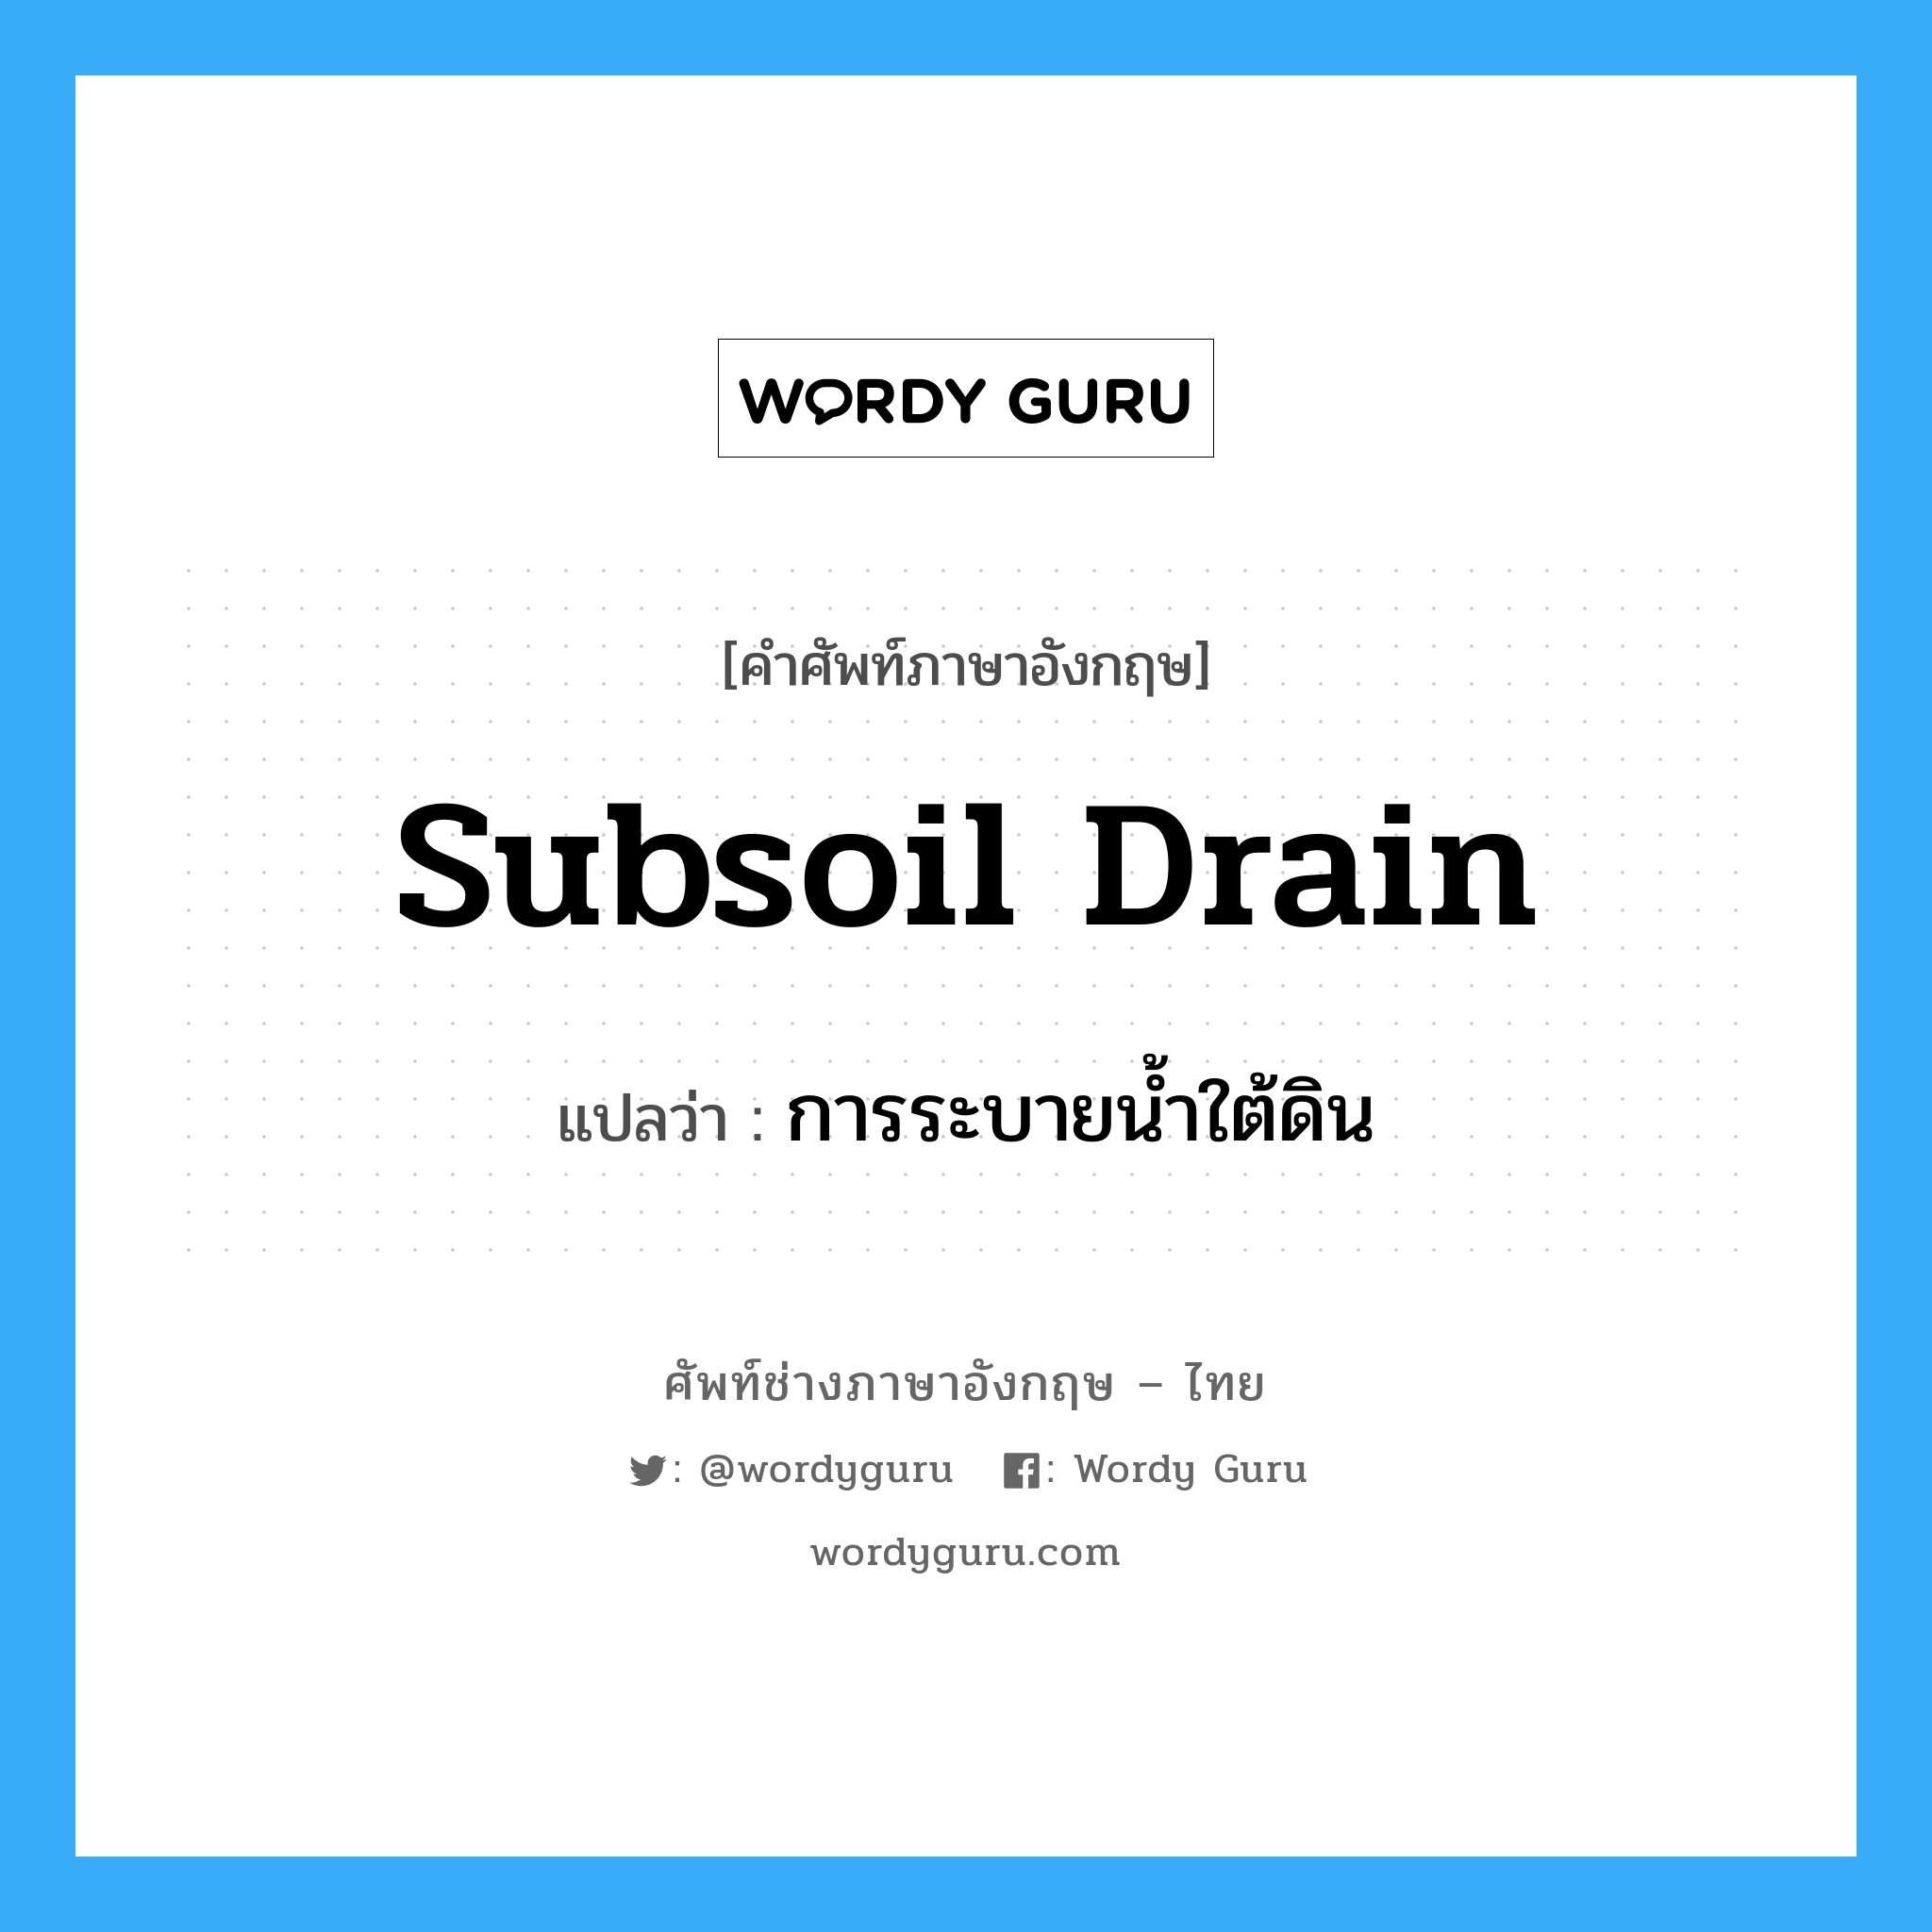 subsoil drain แปลว่า?, คำศัพท์ช่างภาษาอังกฤษ - ไทย subsoil drain คำศัพท์ภาษาอังกฤษ subsoil drain แปลว่า การระบายน้ำใต้ดิน